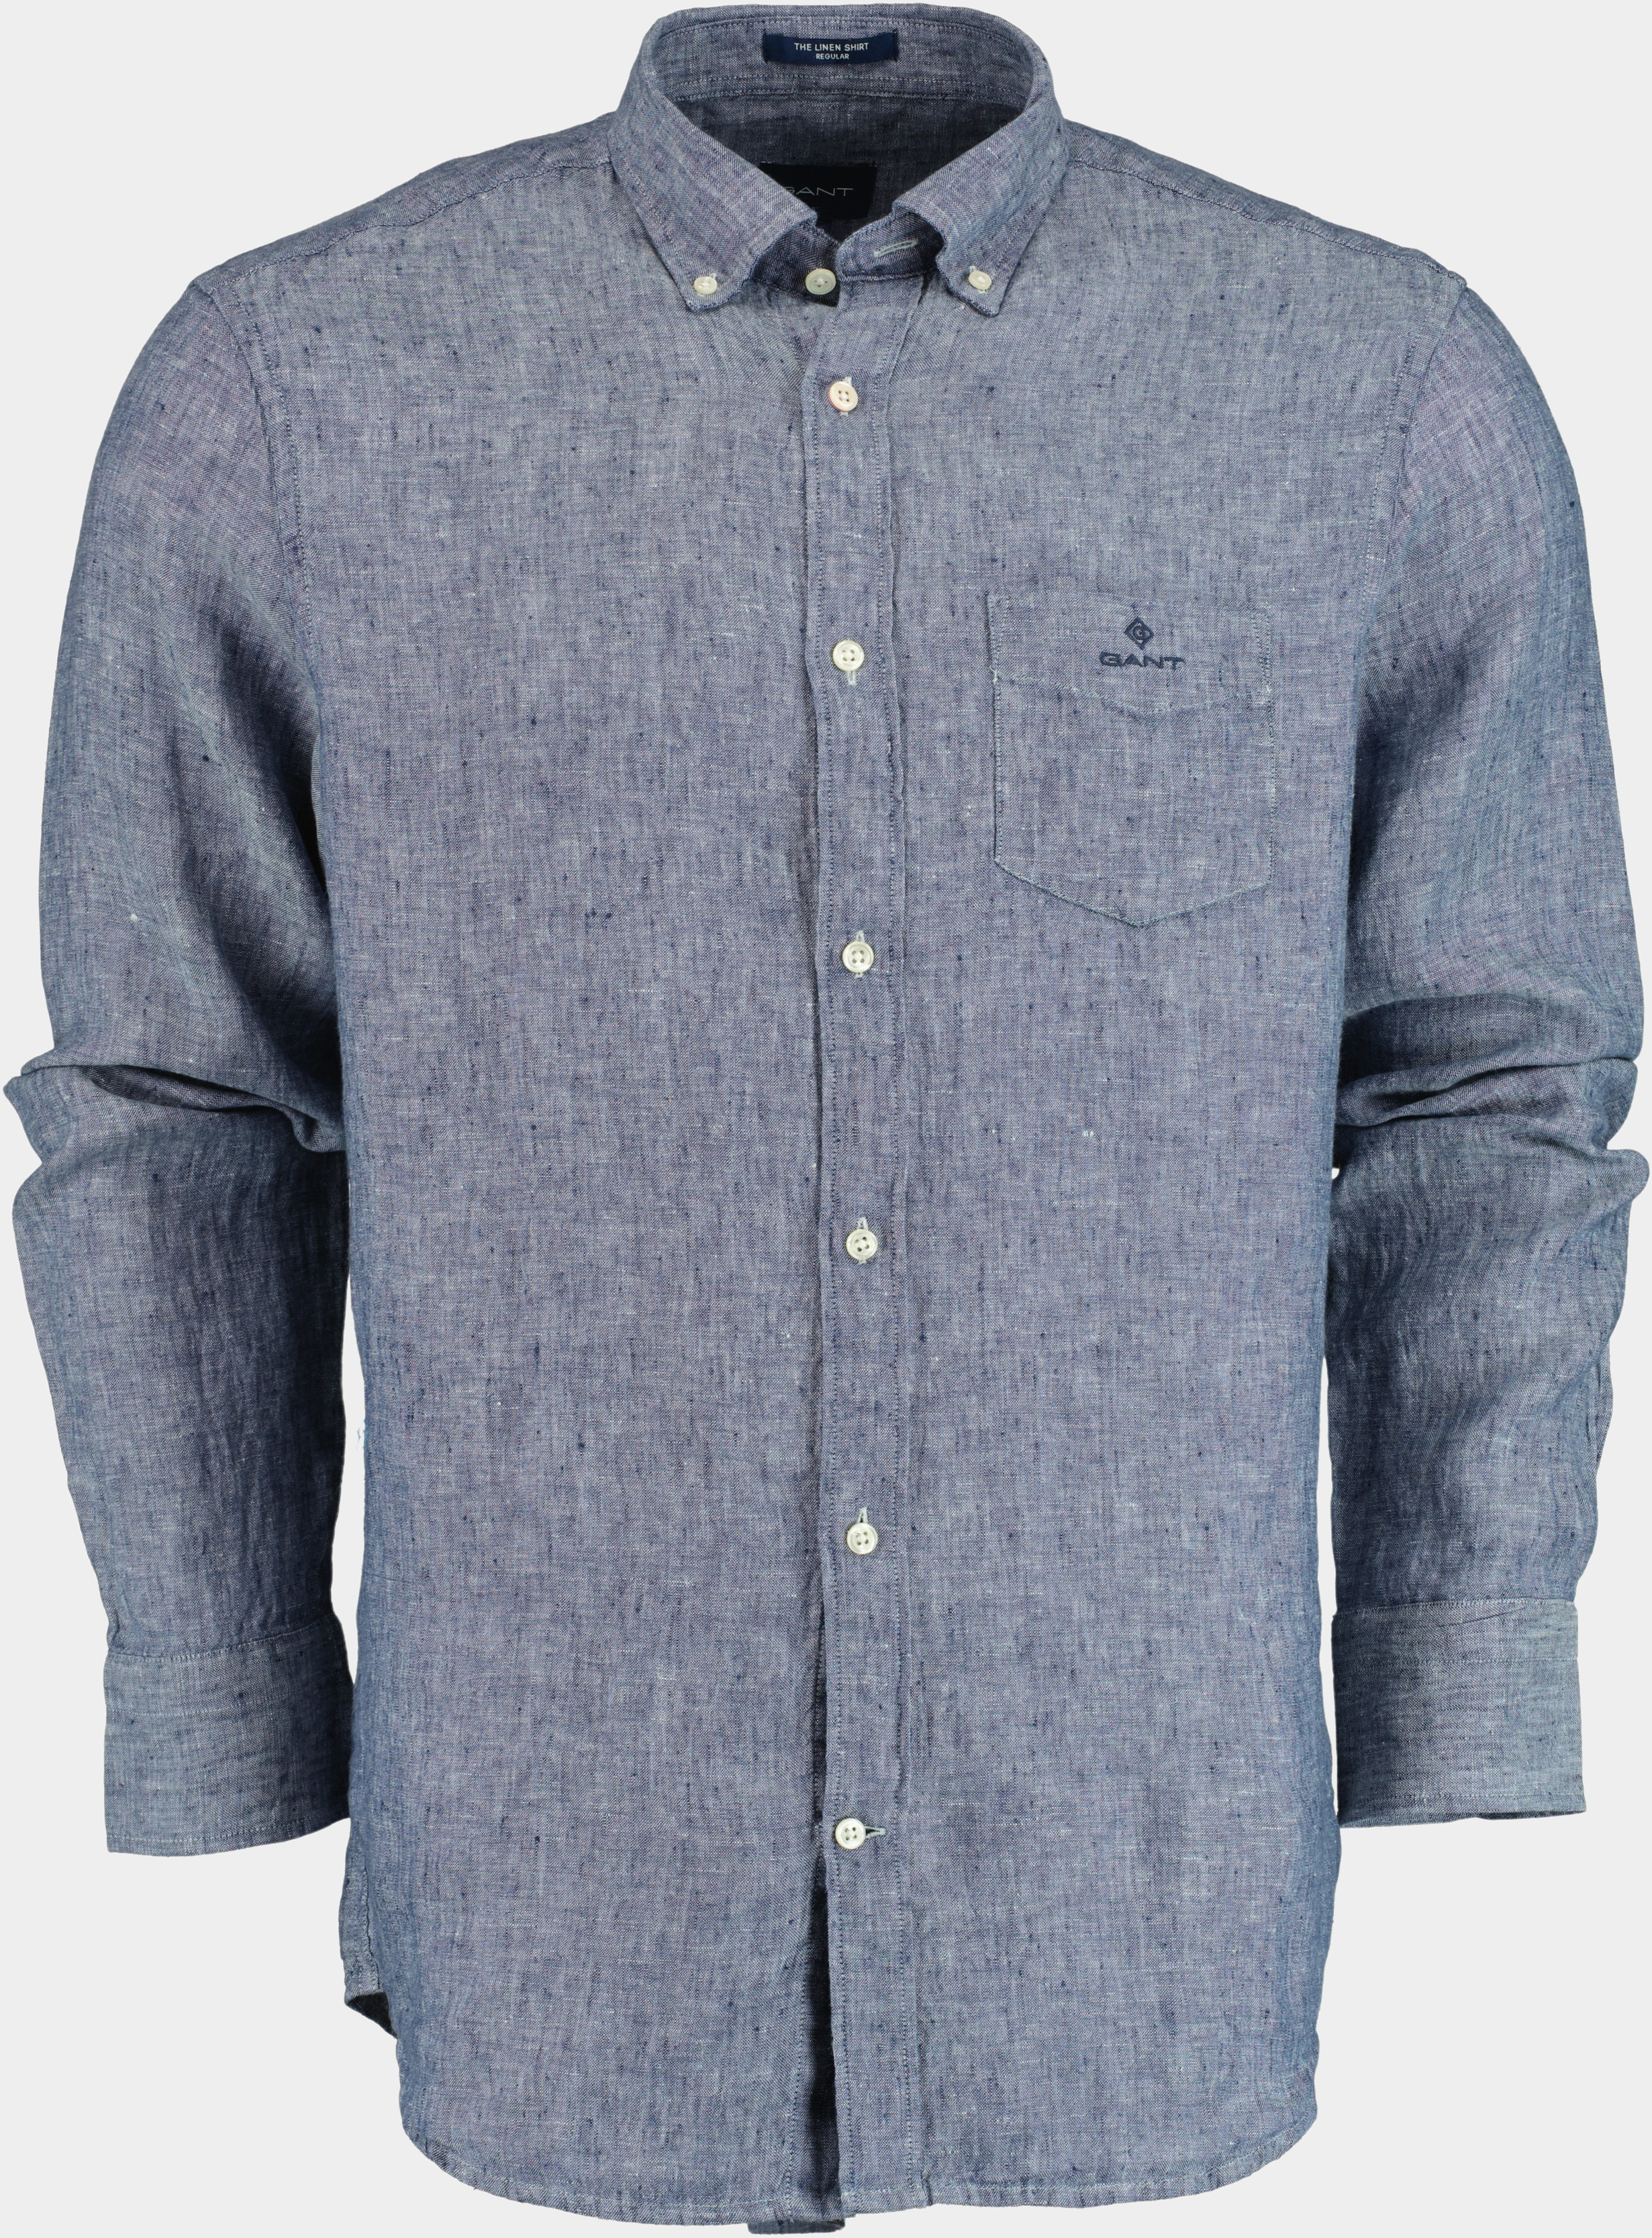 Speciaal Penelope Grote hoeveelheid Gant Casual Hemd Lange Mouw Blauw Overhemd Blauw 100% Linnen 3012420/423 |  Bos Men Shop